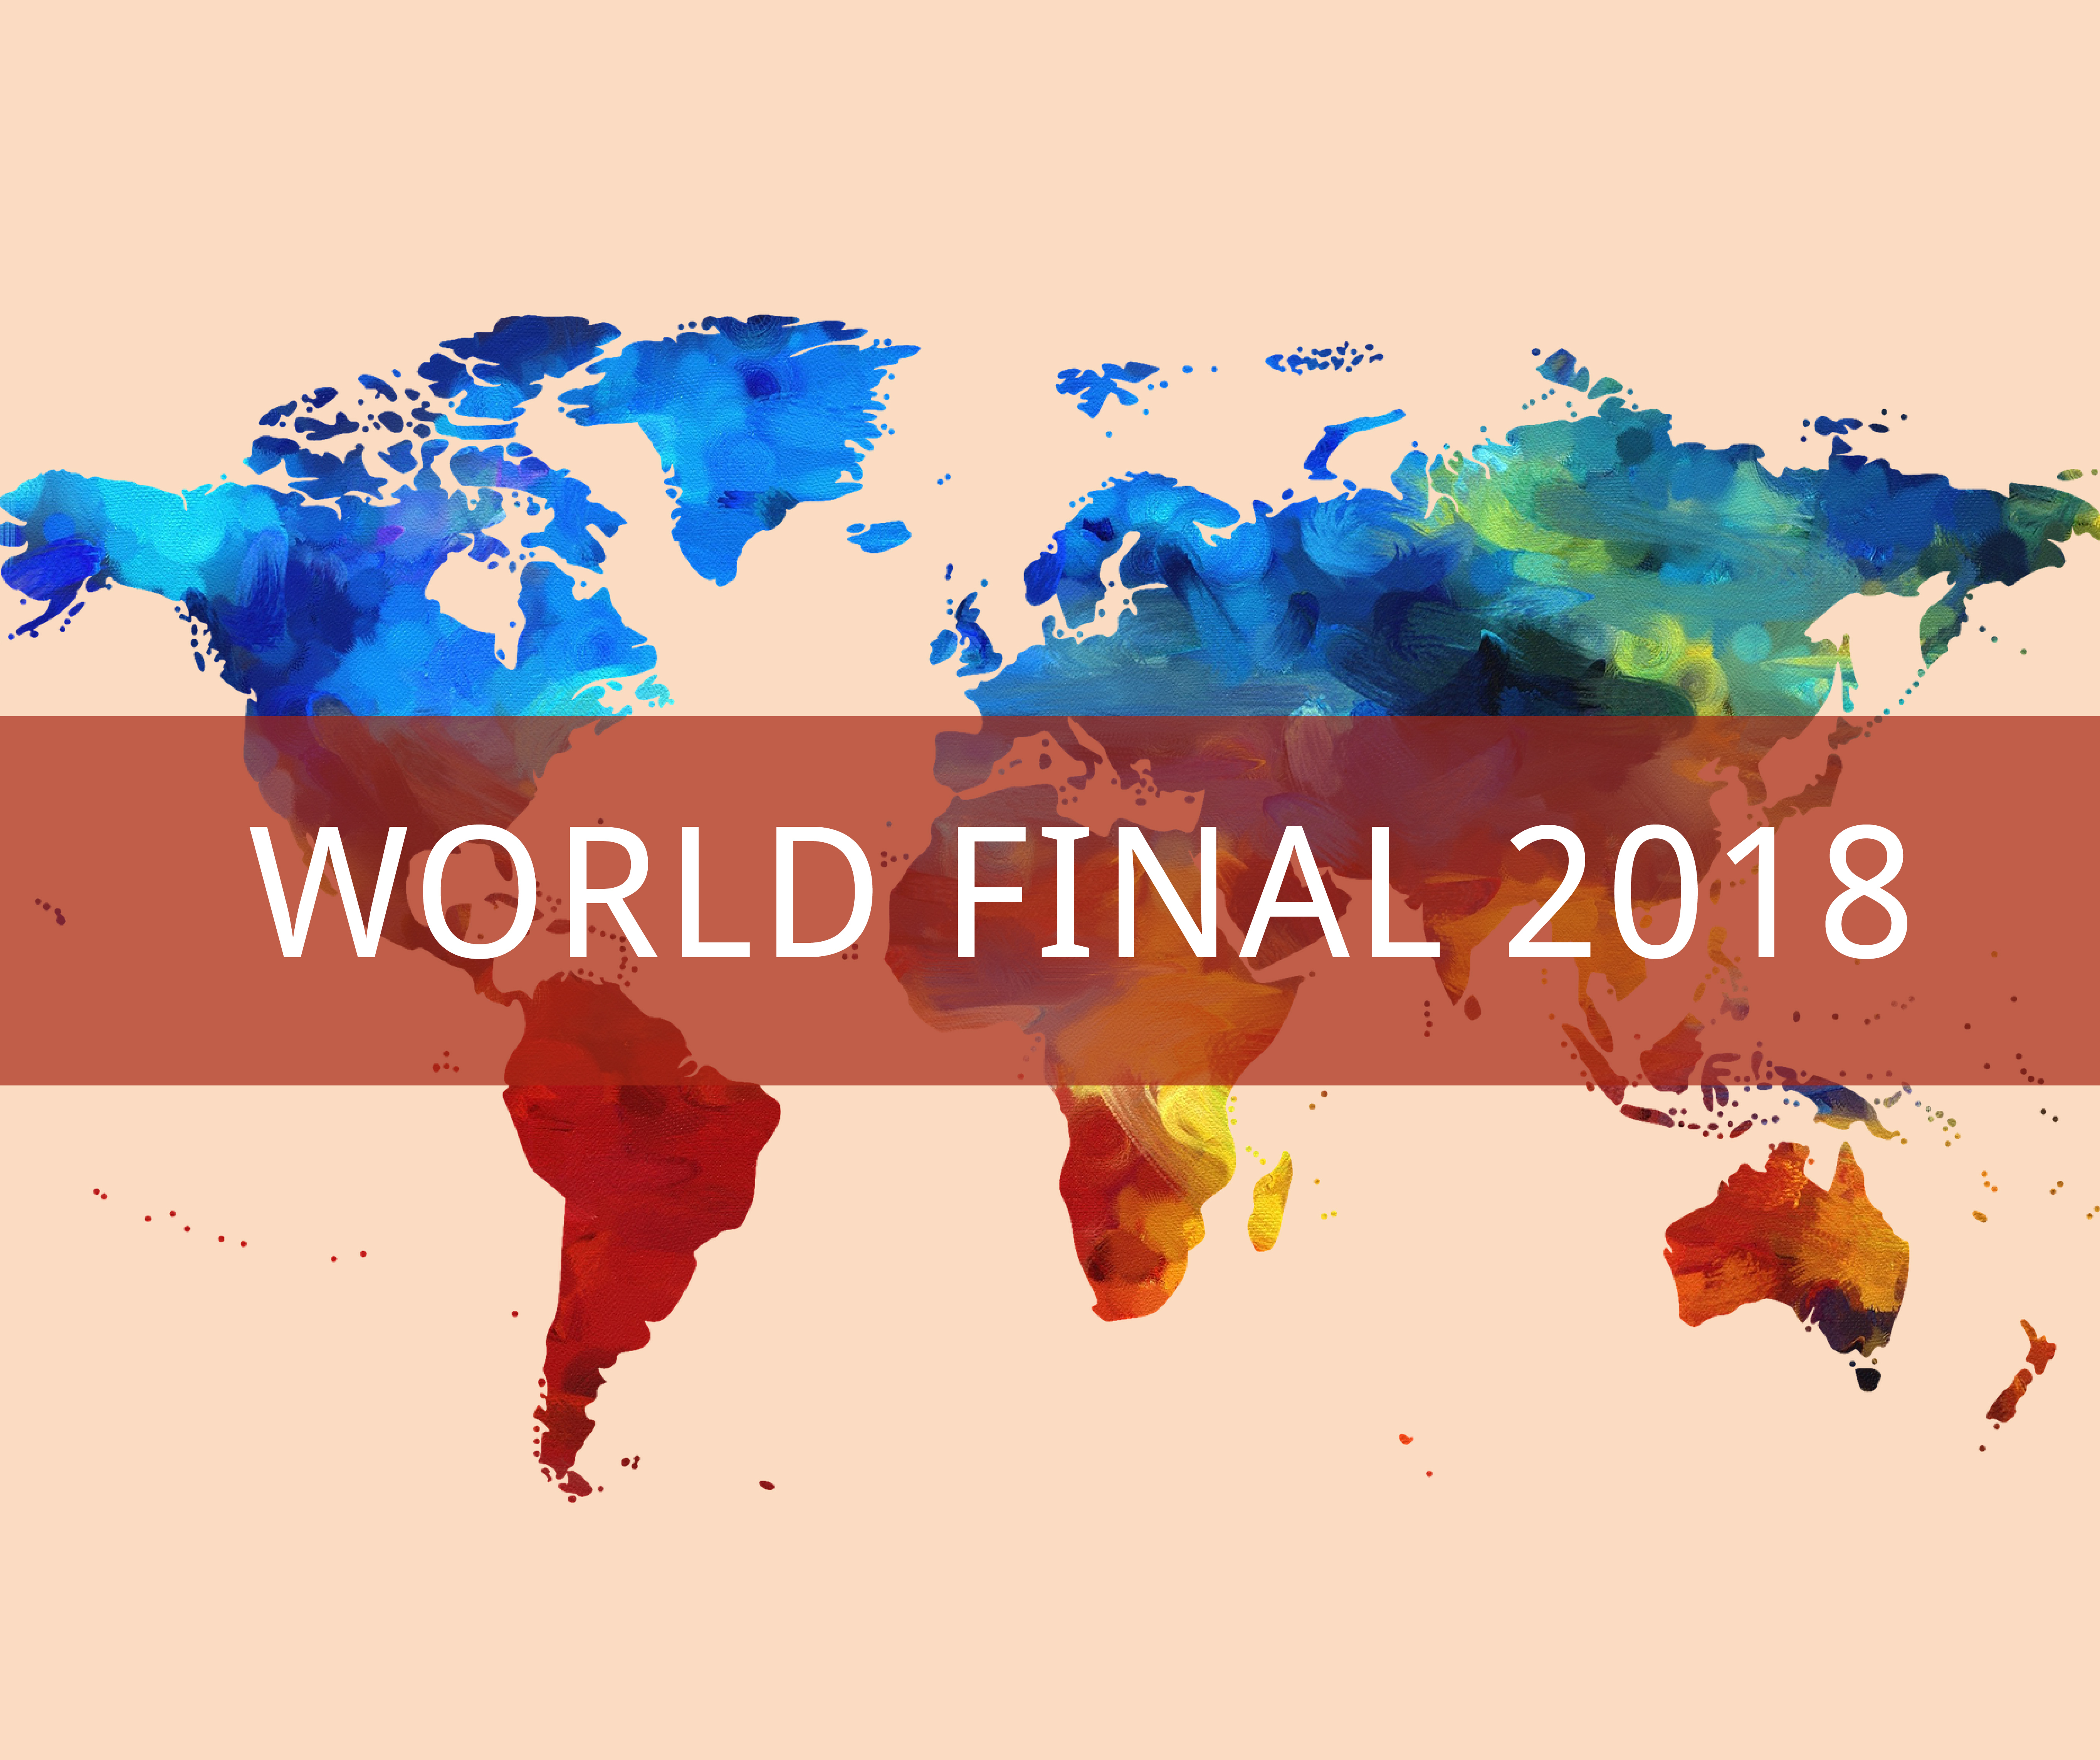 World Final 2018 teaser